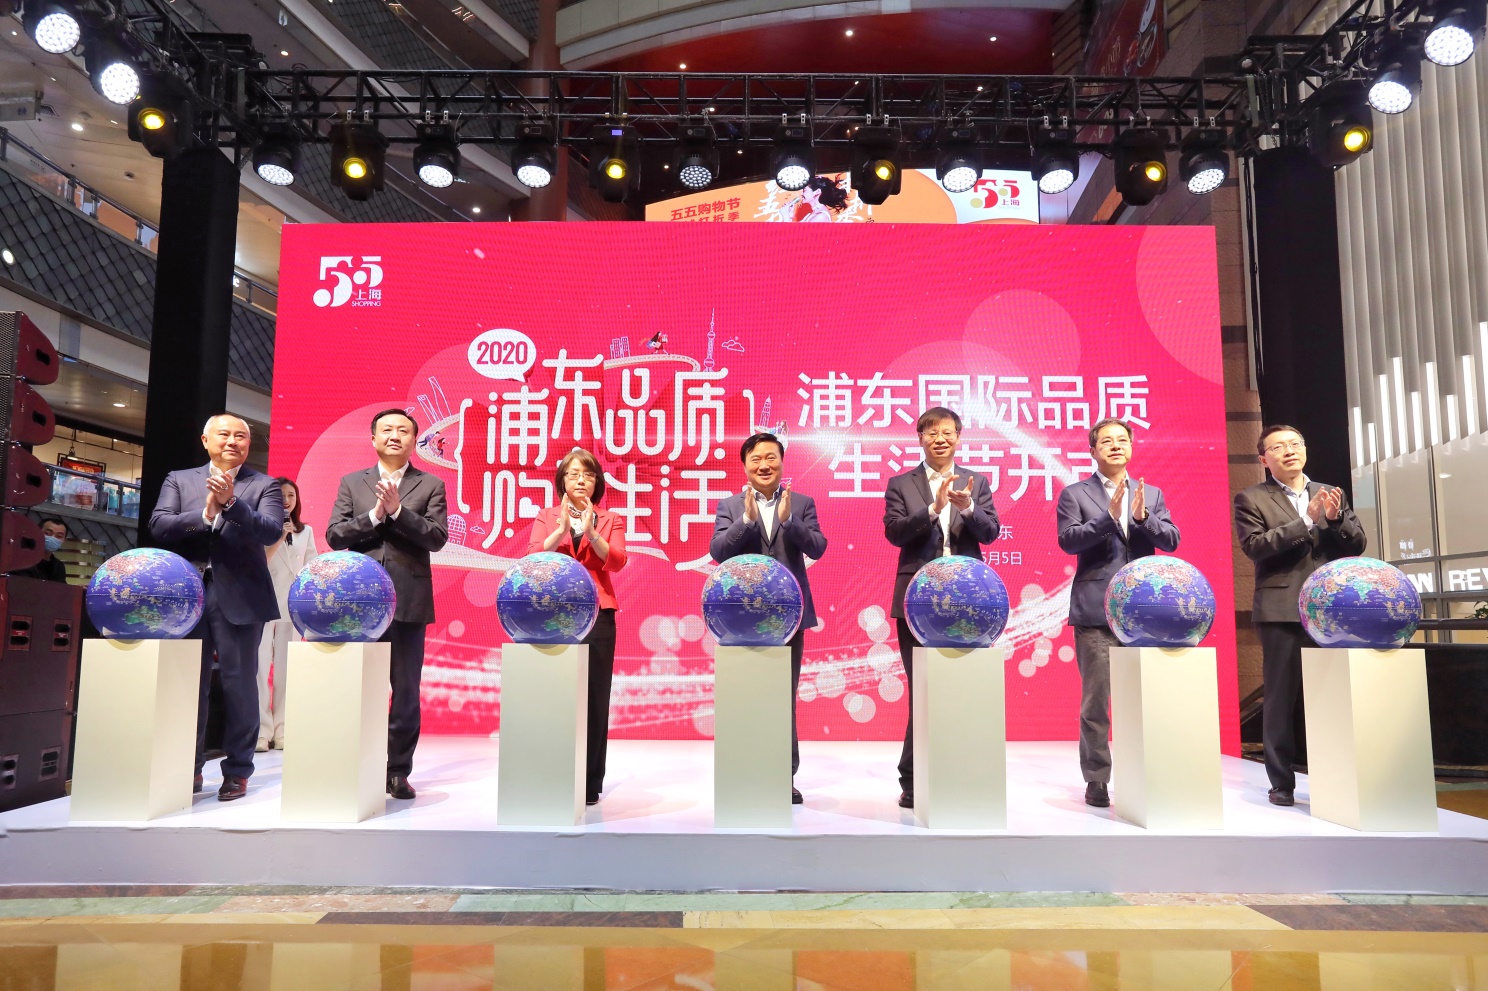 全球好物快闪市集、网红直播... 上海正大广场助力“五五购物节”